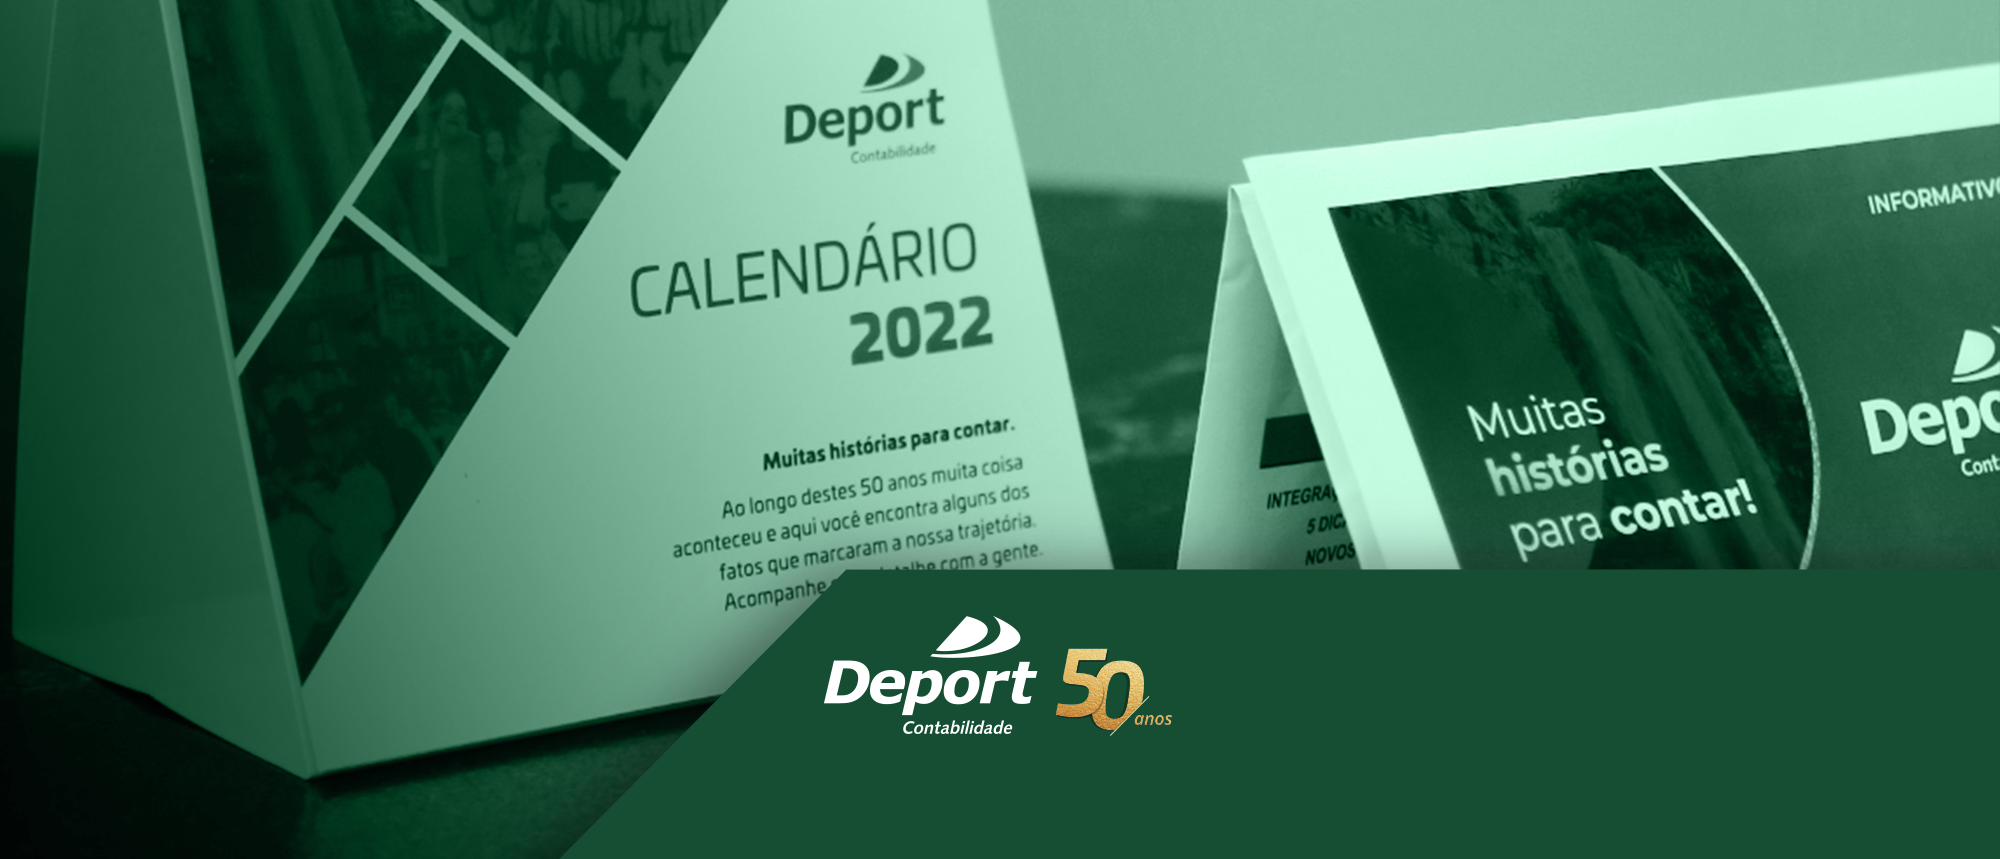 Agosto 2022 | Educação, preservação e amor: assim são os calendários da Deport